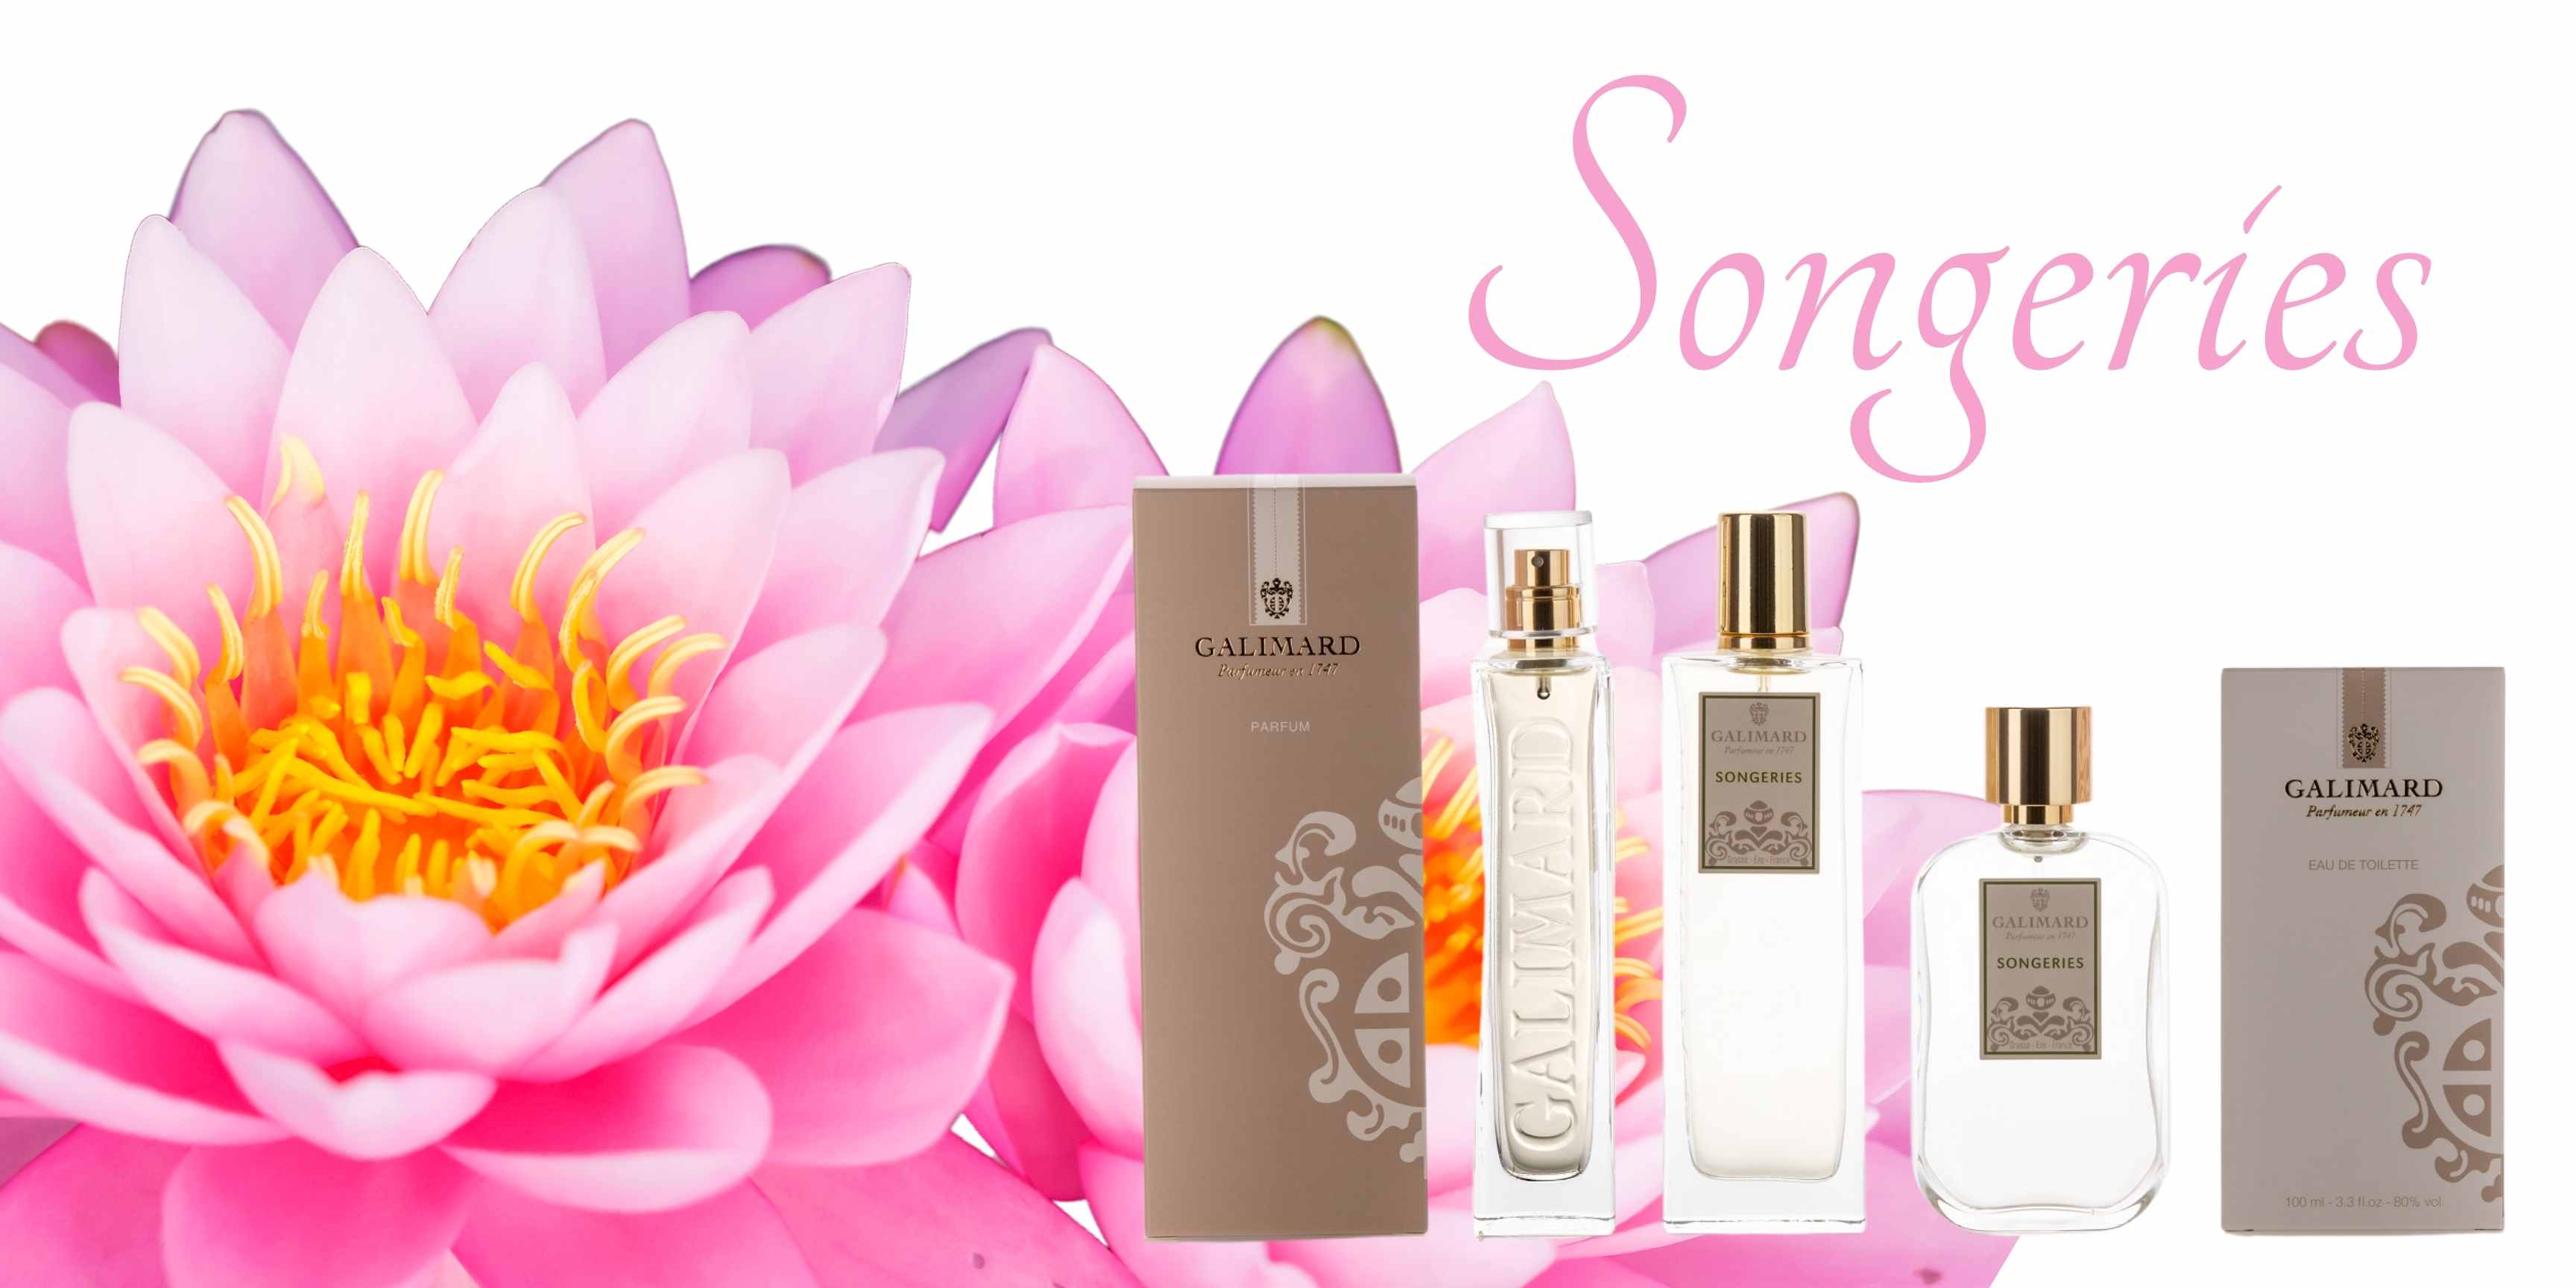 Songeries krásná svěží květinová vůně francouzský parfém pro ženy